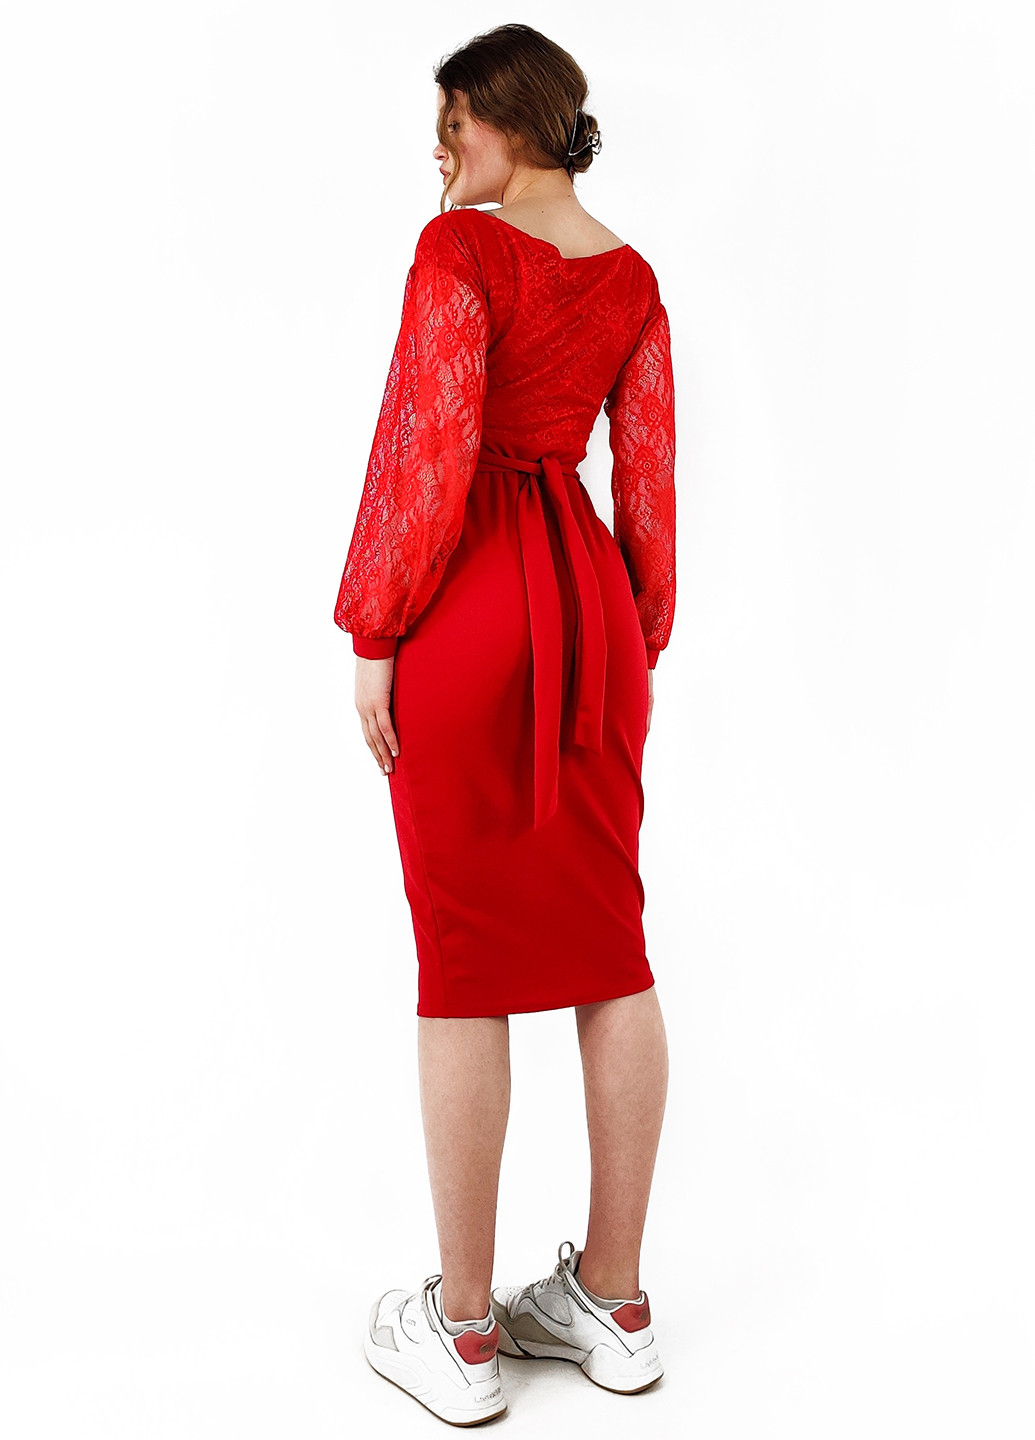 Красное коктейльное платье футляр Boohoo однотонное